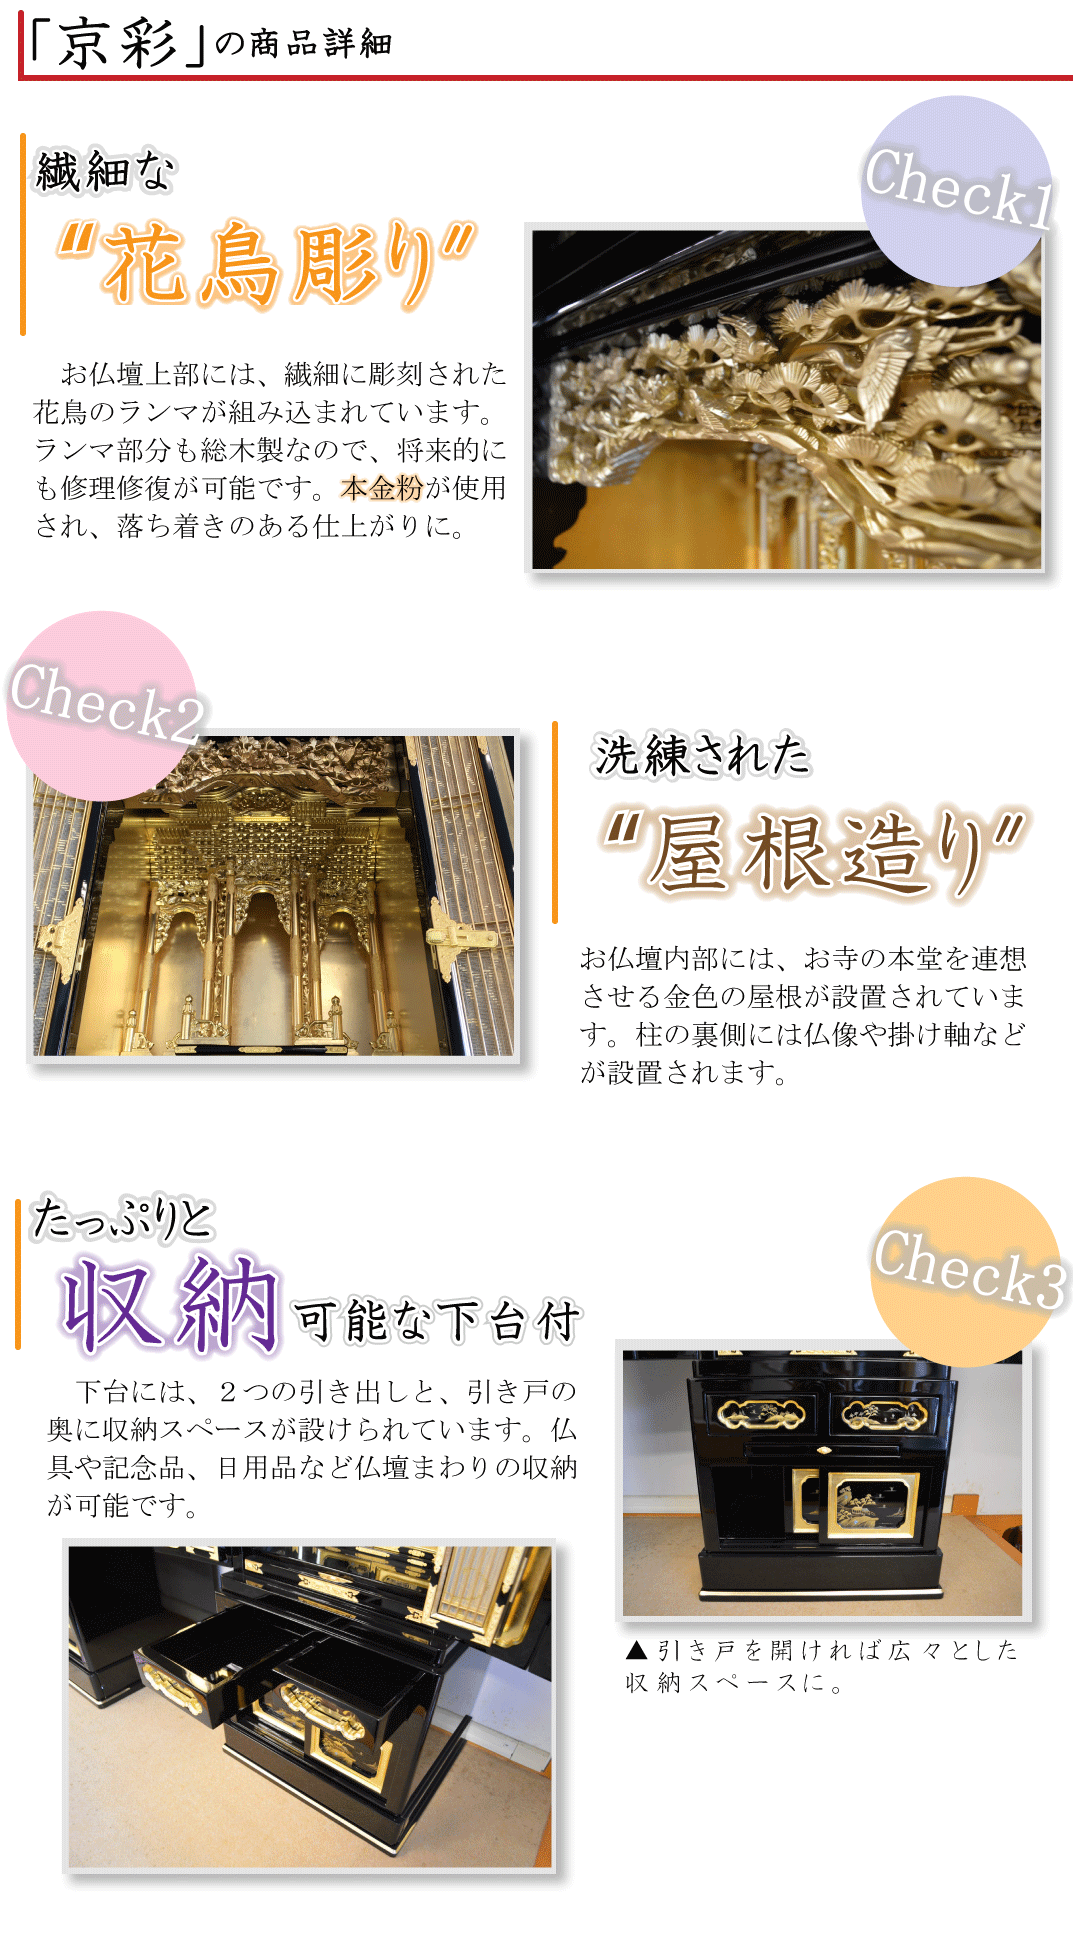 京型金仏壇、京彩の詳細のご案内です。本金粉で仕上げたランマ、洗練された屋根づくり、収納力のある下台が備わっています。コンパクトでありながら、伝統技法を駆使して製作された本格的なお仏壇です。